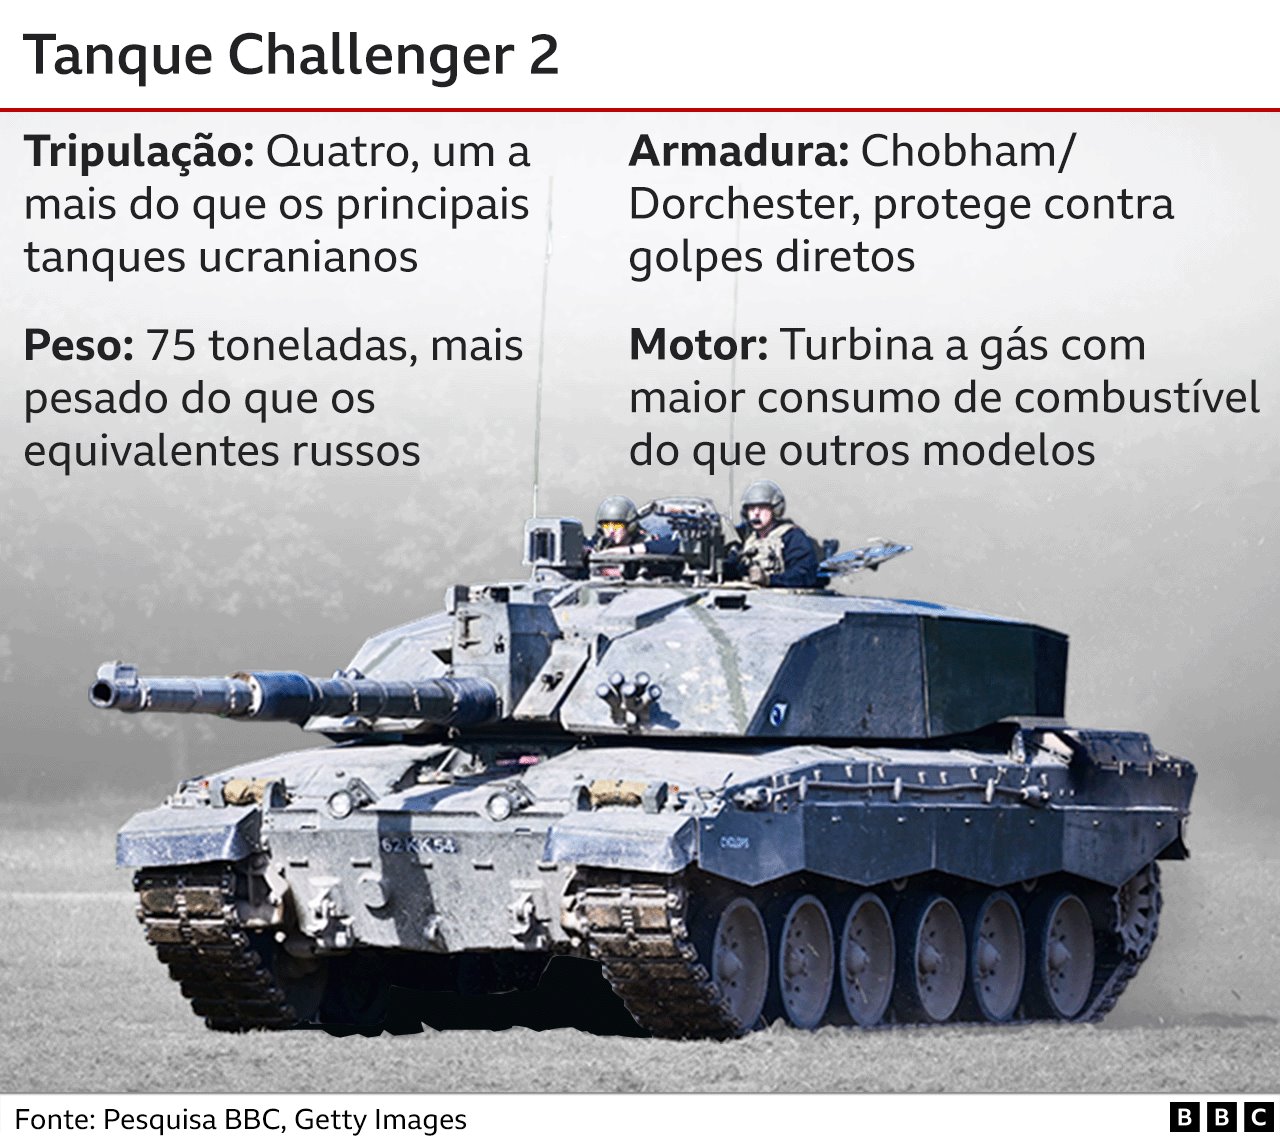 Gráfico com detalhes do tanque Challenger 2